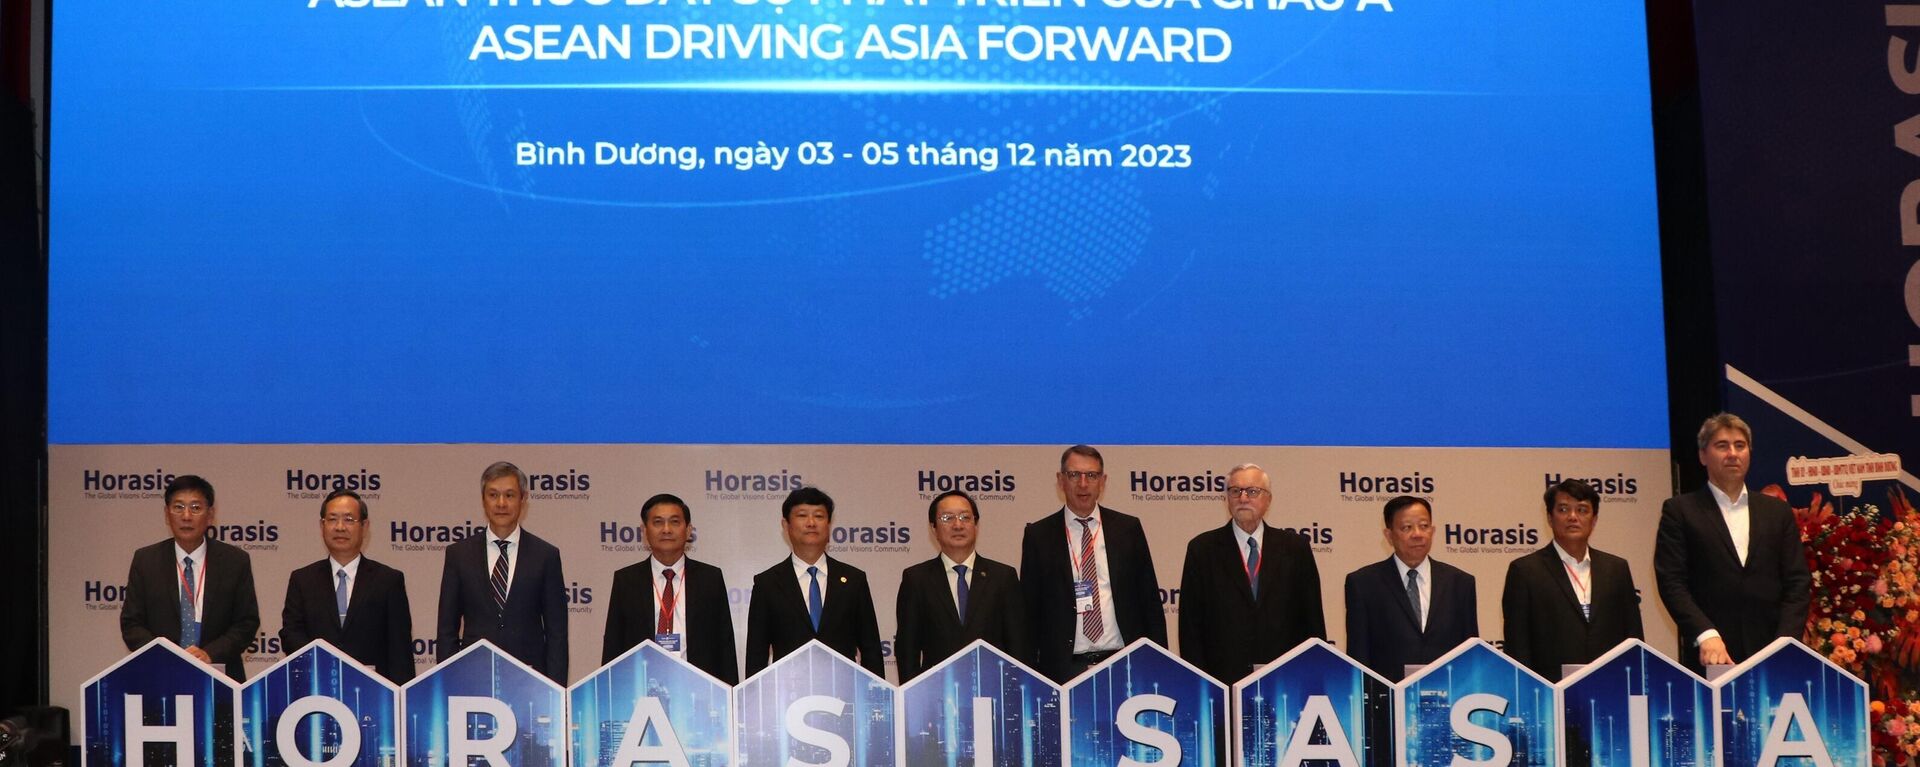 Khai mạc Diễn đàn Hợp tác Kinh tế Horasis Châu Á năm 2023 với chủ đề Đông Nam Á thúc đẩy sự phát triển của Châu Á. - Sputnik Việt Nam, 1920, 04.12.2023